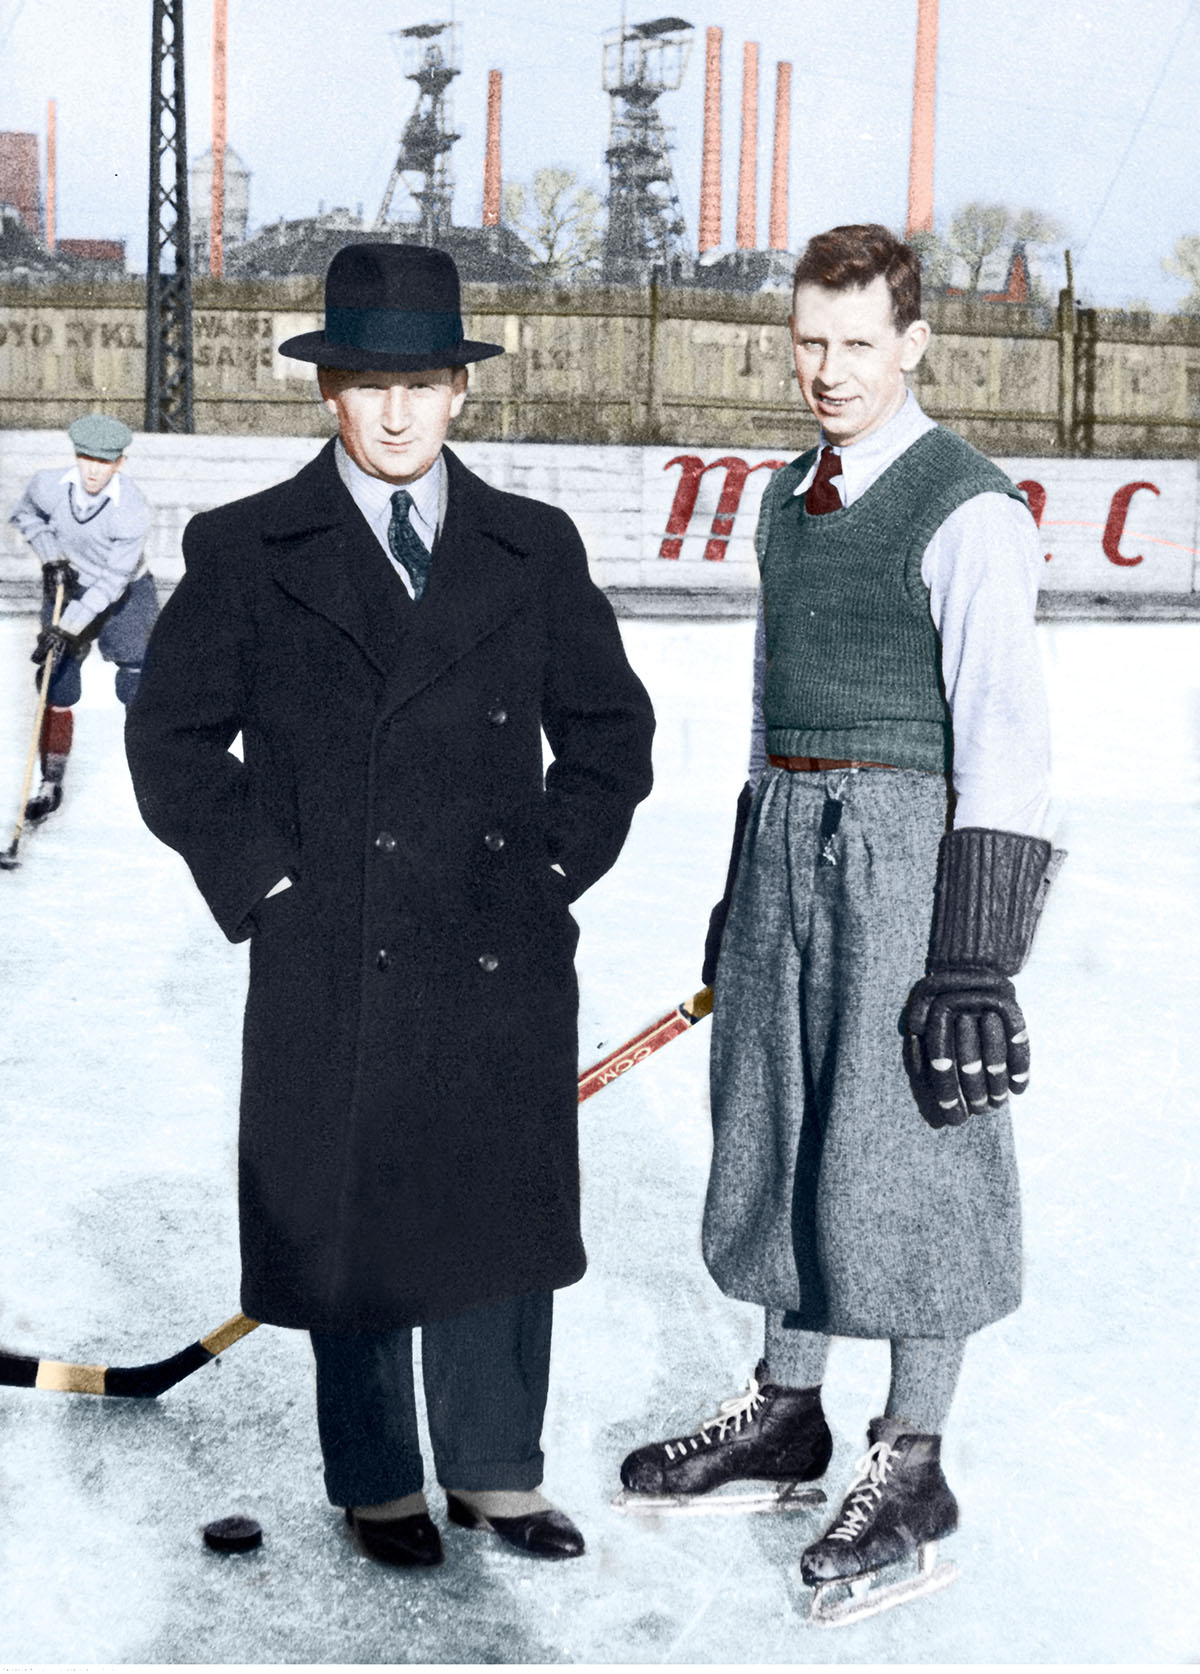 Lucjan Kulej (z lewej) i Aleksander Tupalski na lodowisku w Katowicach podczas obozu treningowego hokeistów, grudzień 1934 r. Źródło: Narodowe Archiwum Cyfrowe